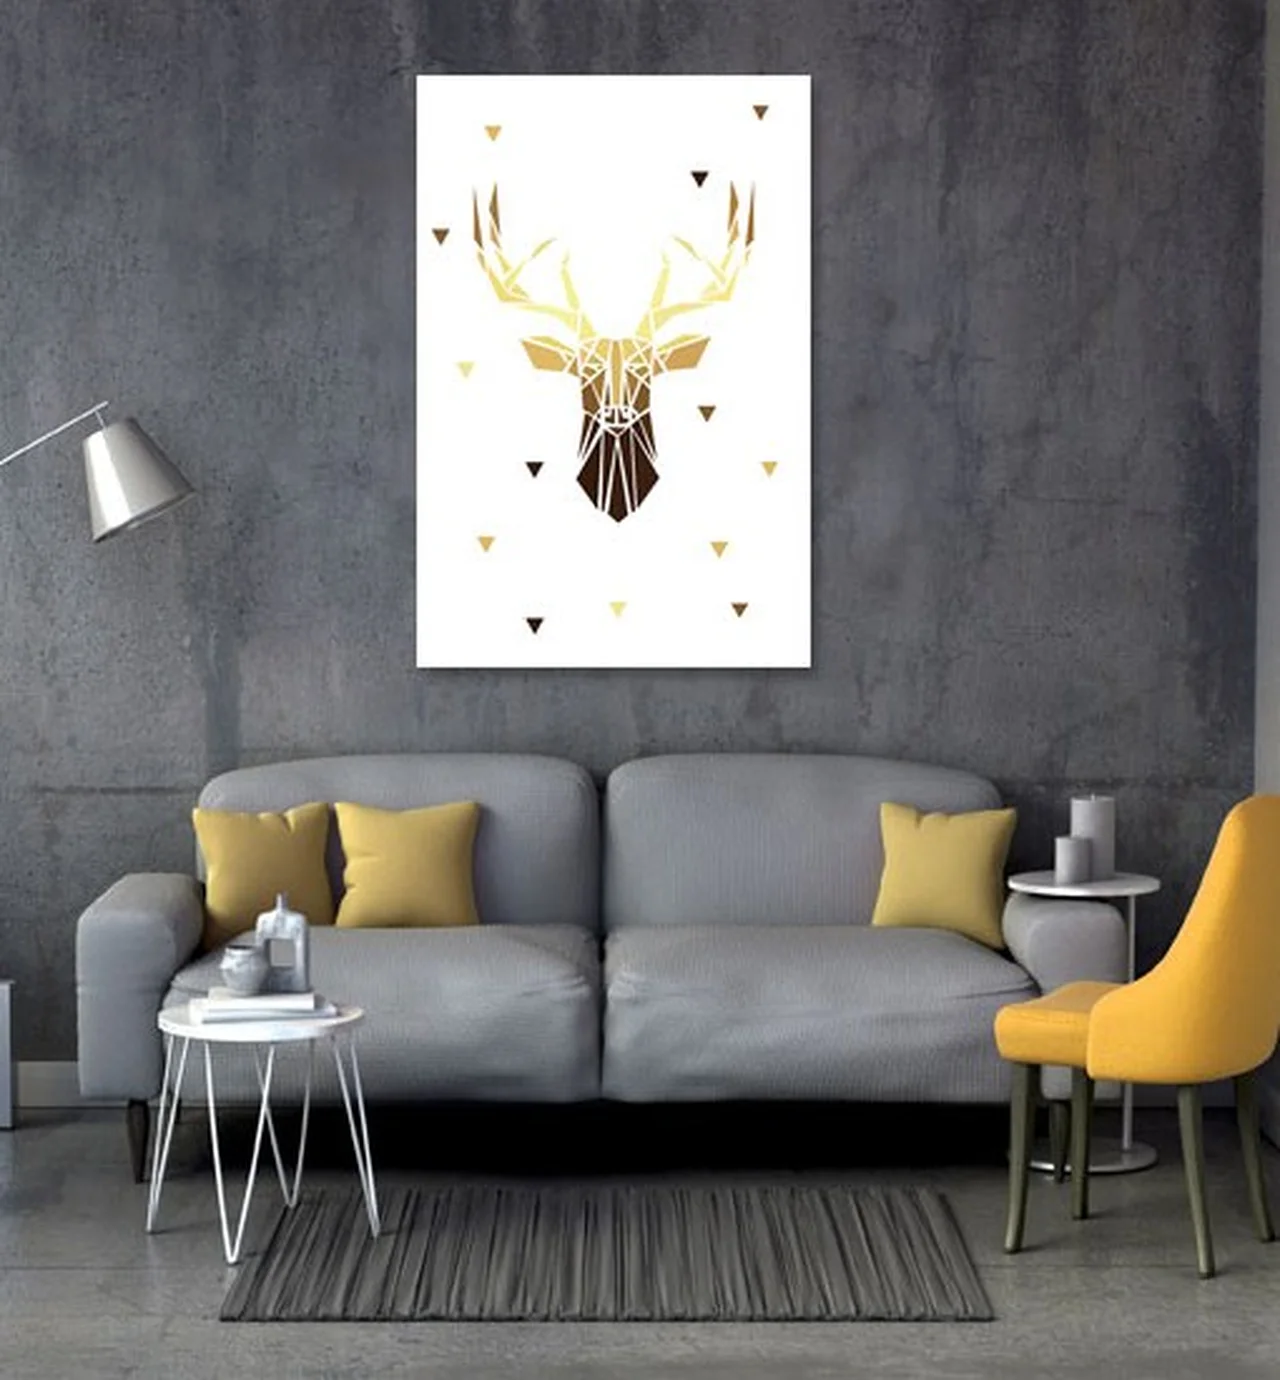 Świetny obraz z motywem geometrycznego jelenia w złotych barwach